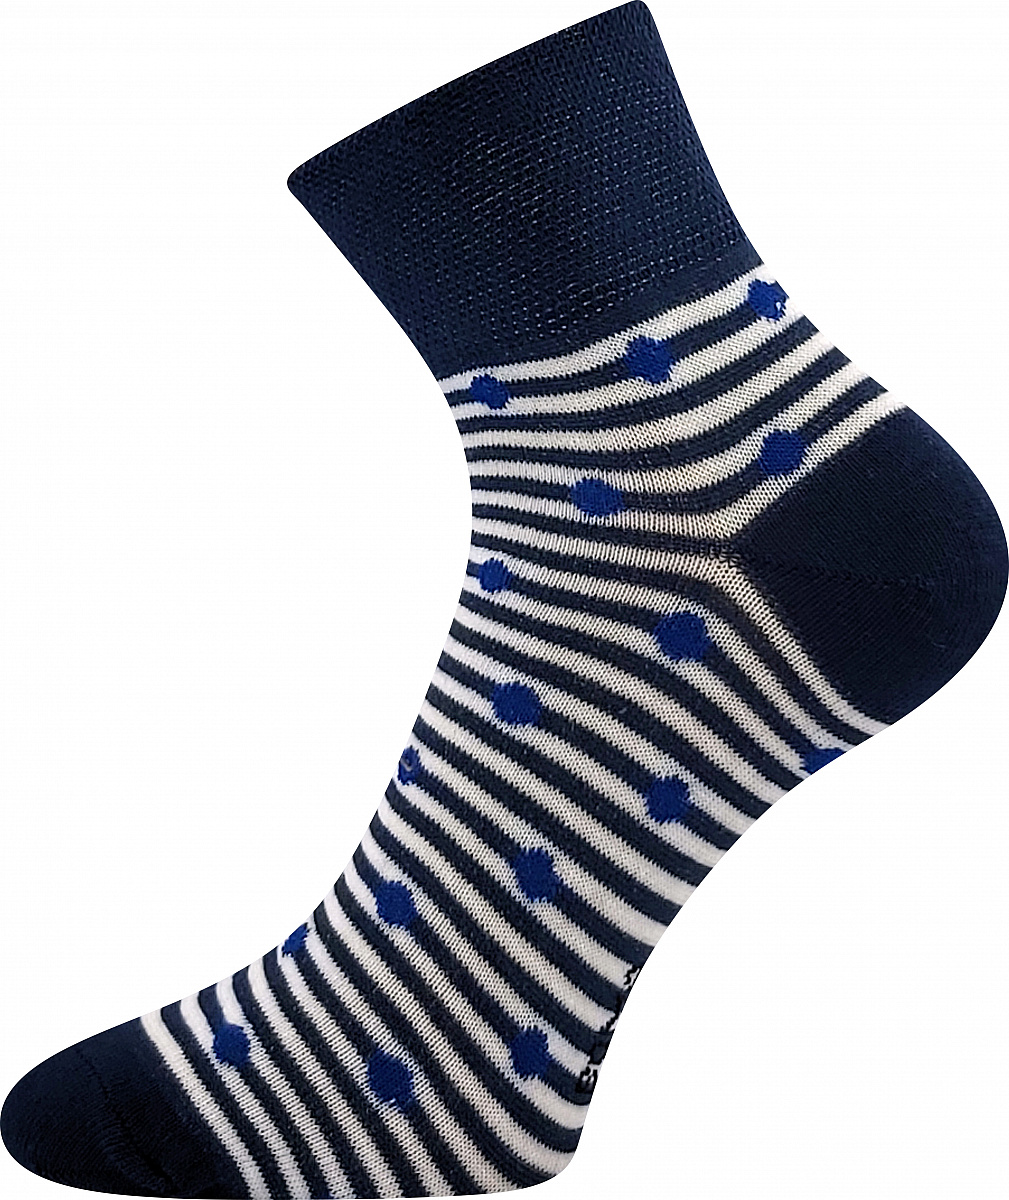 BOMA dámské ponožky Jana 37 modrá